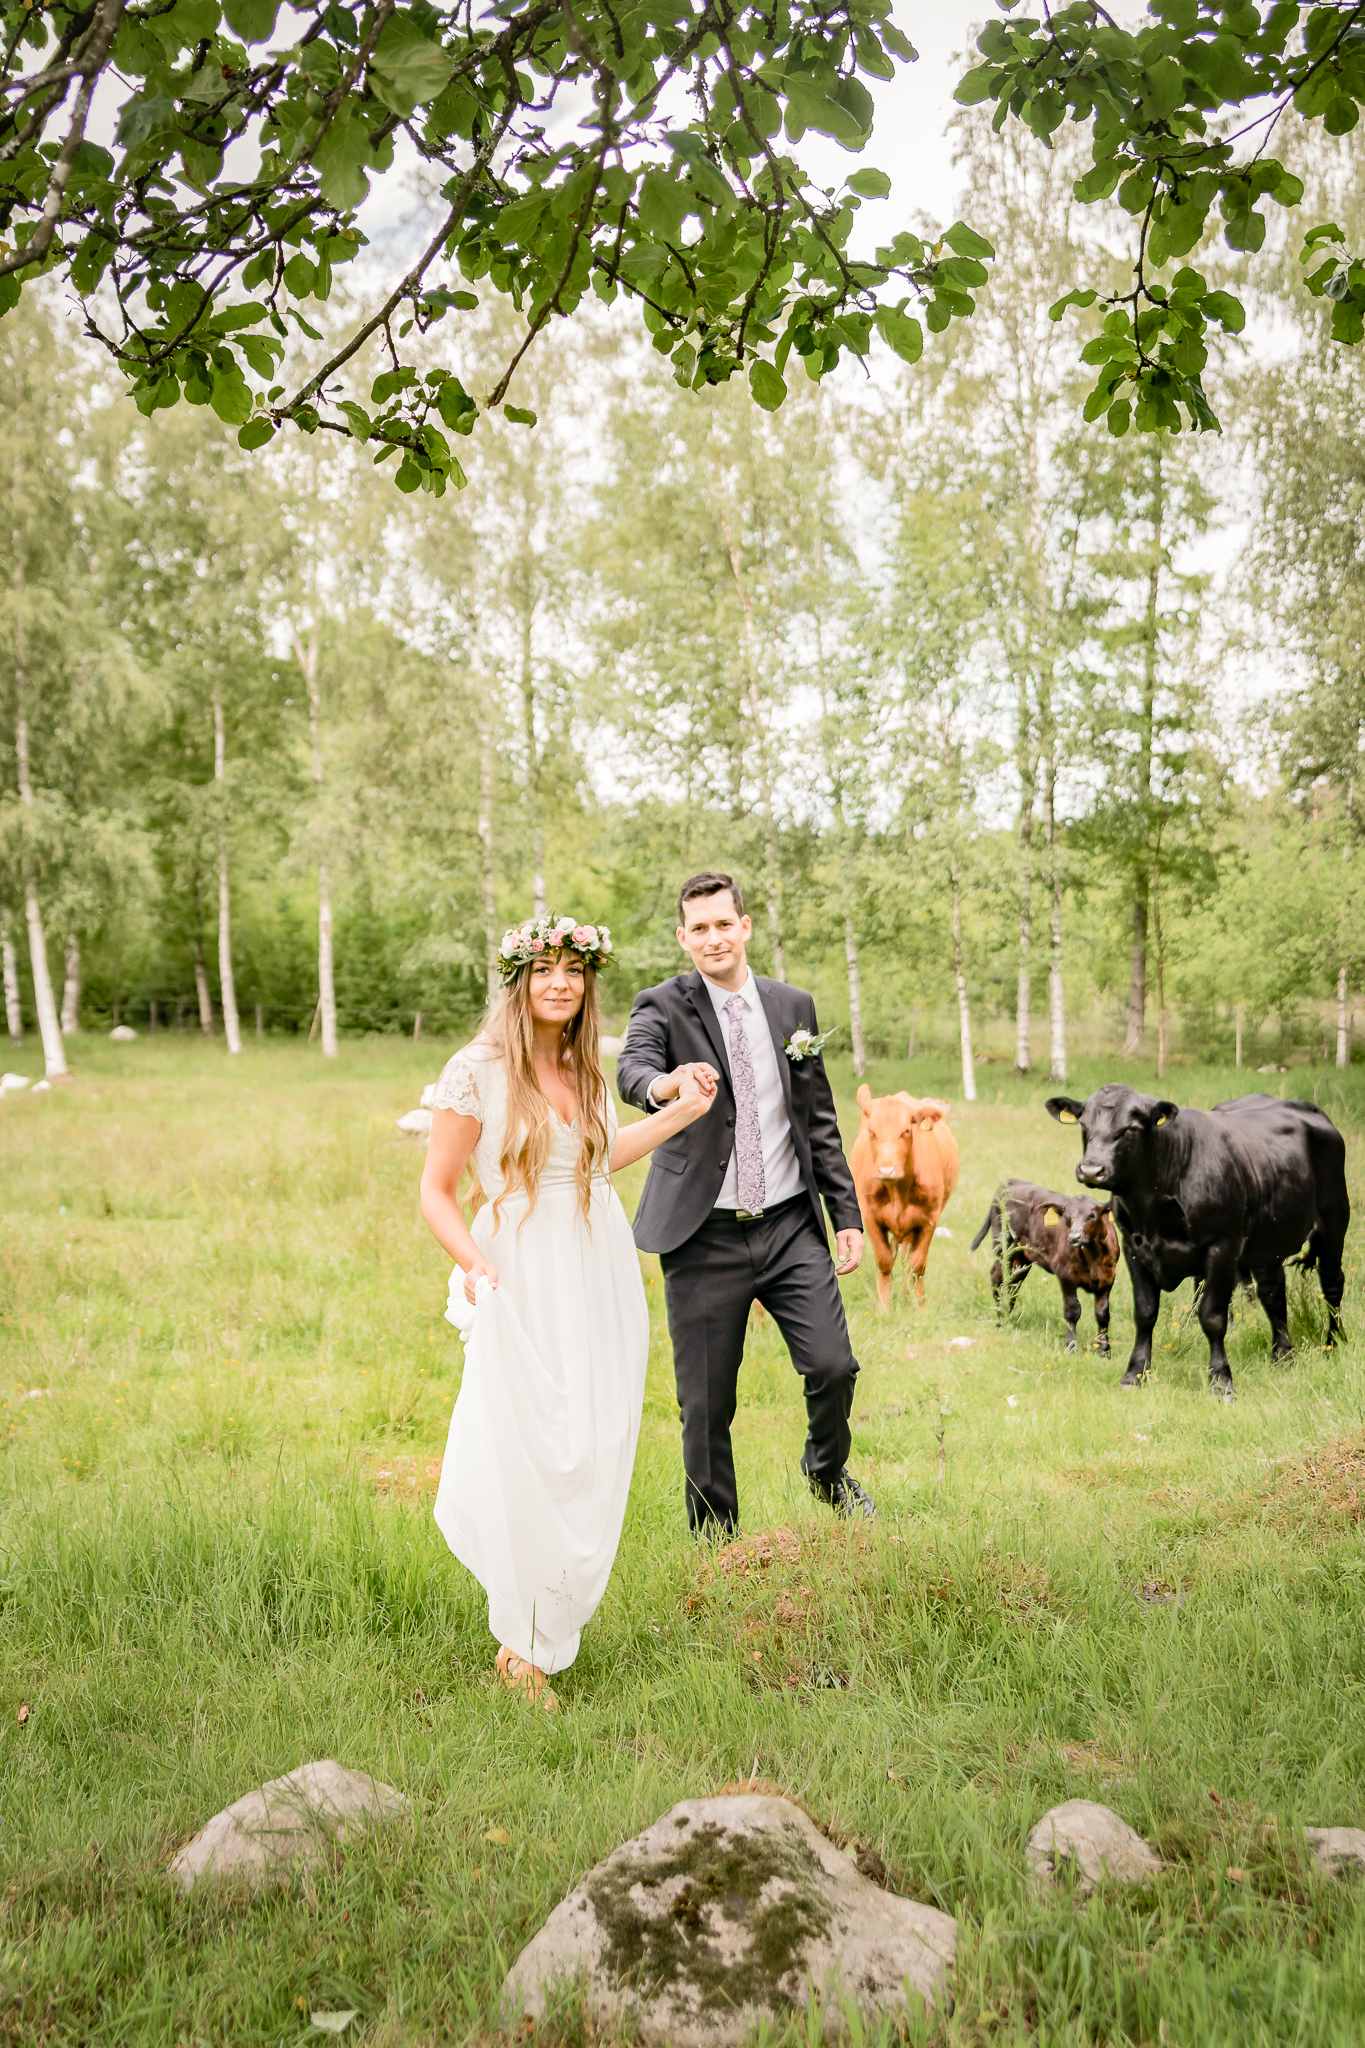 Bondepar lantligt bröllop, bondebröllop, brudpar i kohage tillsammans med bröllopsfotografen bland kossor och kalvar på sommaräng, blommor i håret